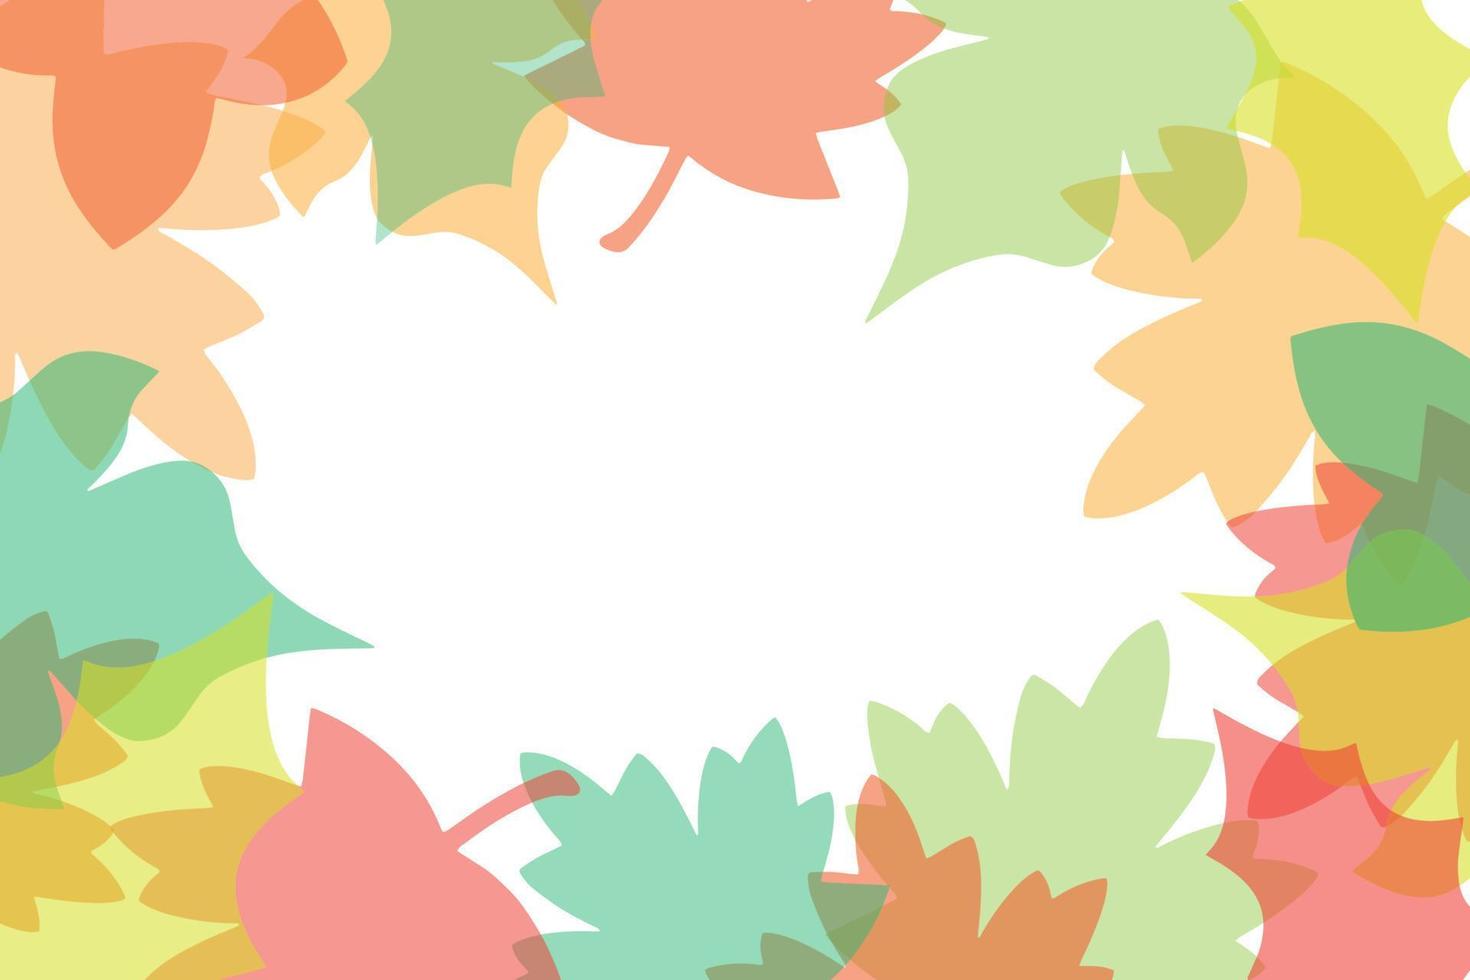 heldere vector herfst achtergrond met bladeren. naadloze patroon.wenskaart, uitnodiging, badge, verkoopbanner, label